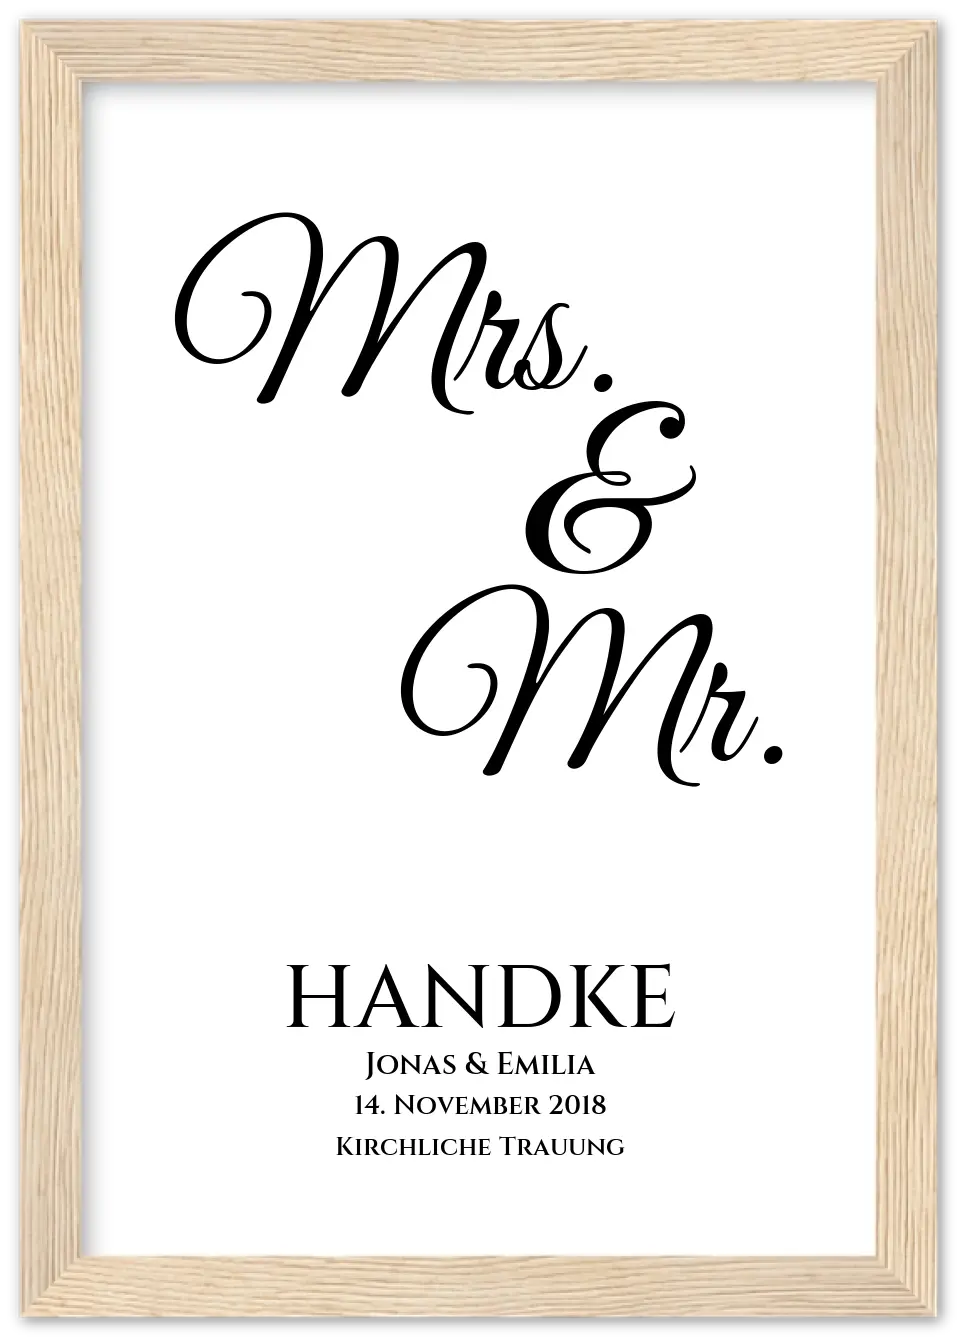 Personalisiertes Hochzeitsposter "Mr. & Mrs." |  Hochzeitsgeschenk mit Namen und Datum | LGBTQ+